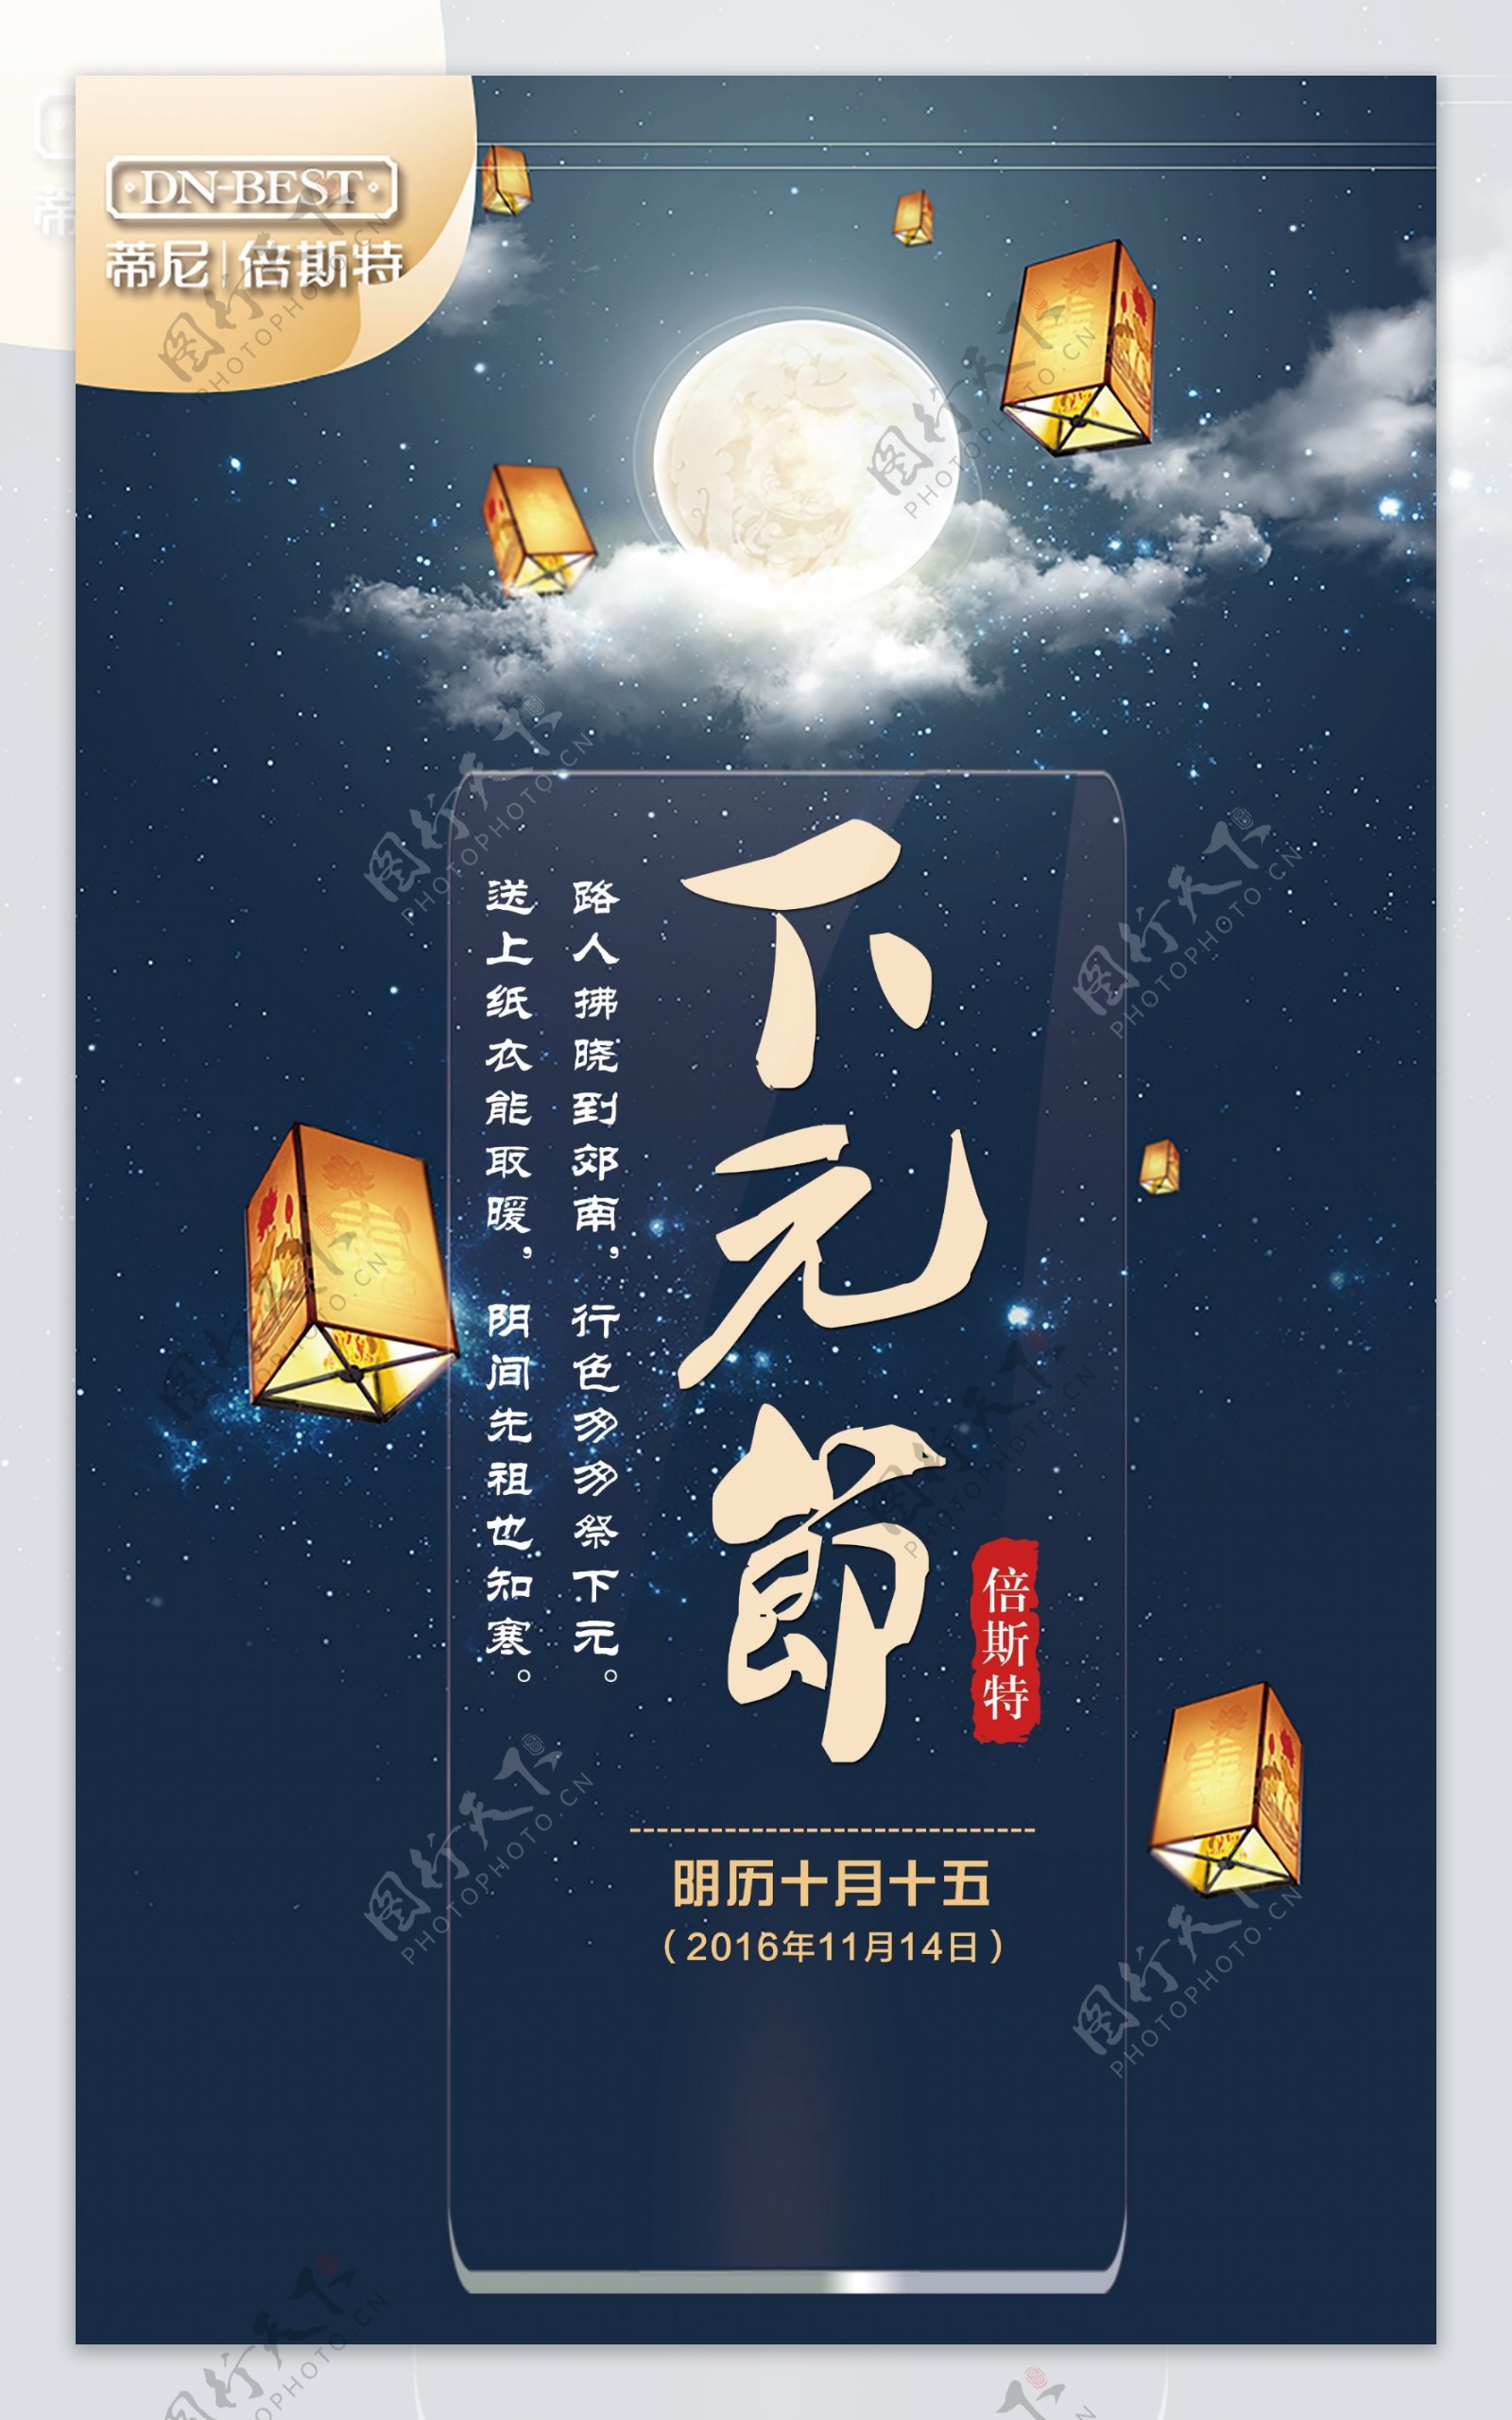 中国传统节日孔明灯下元节